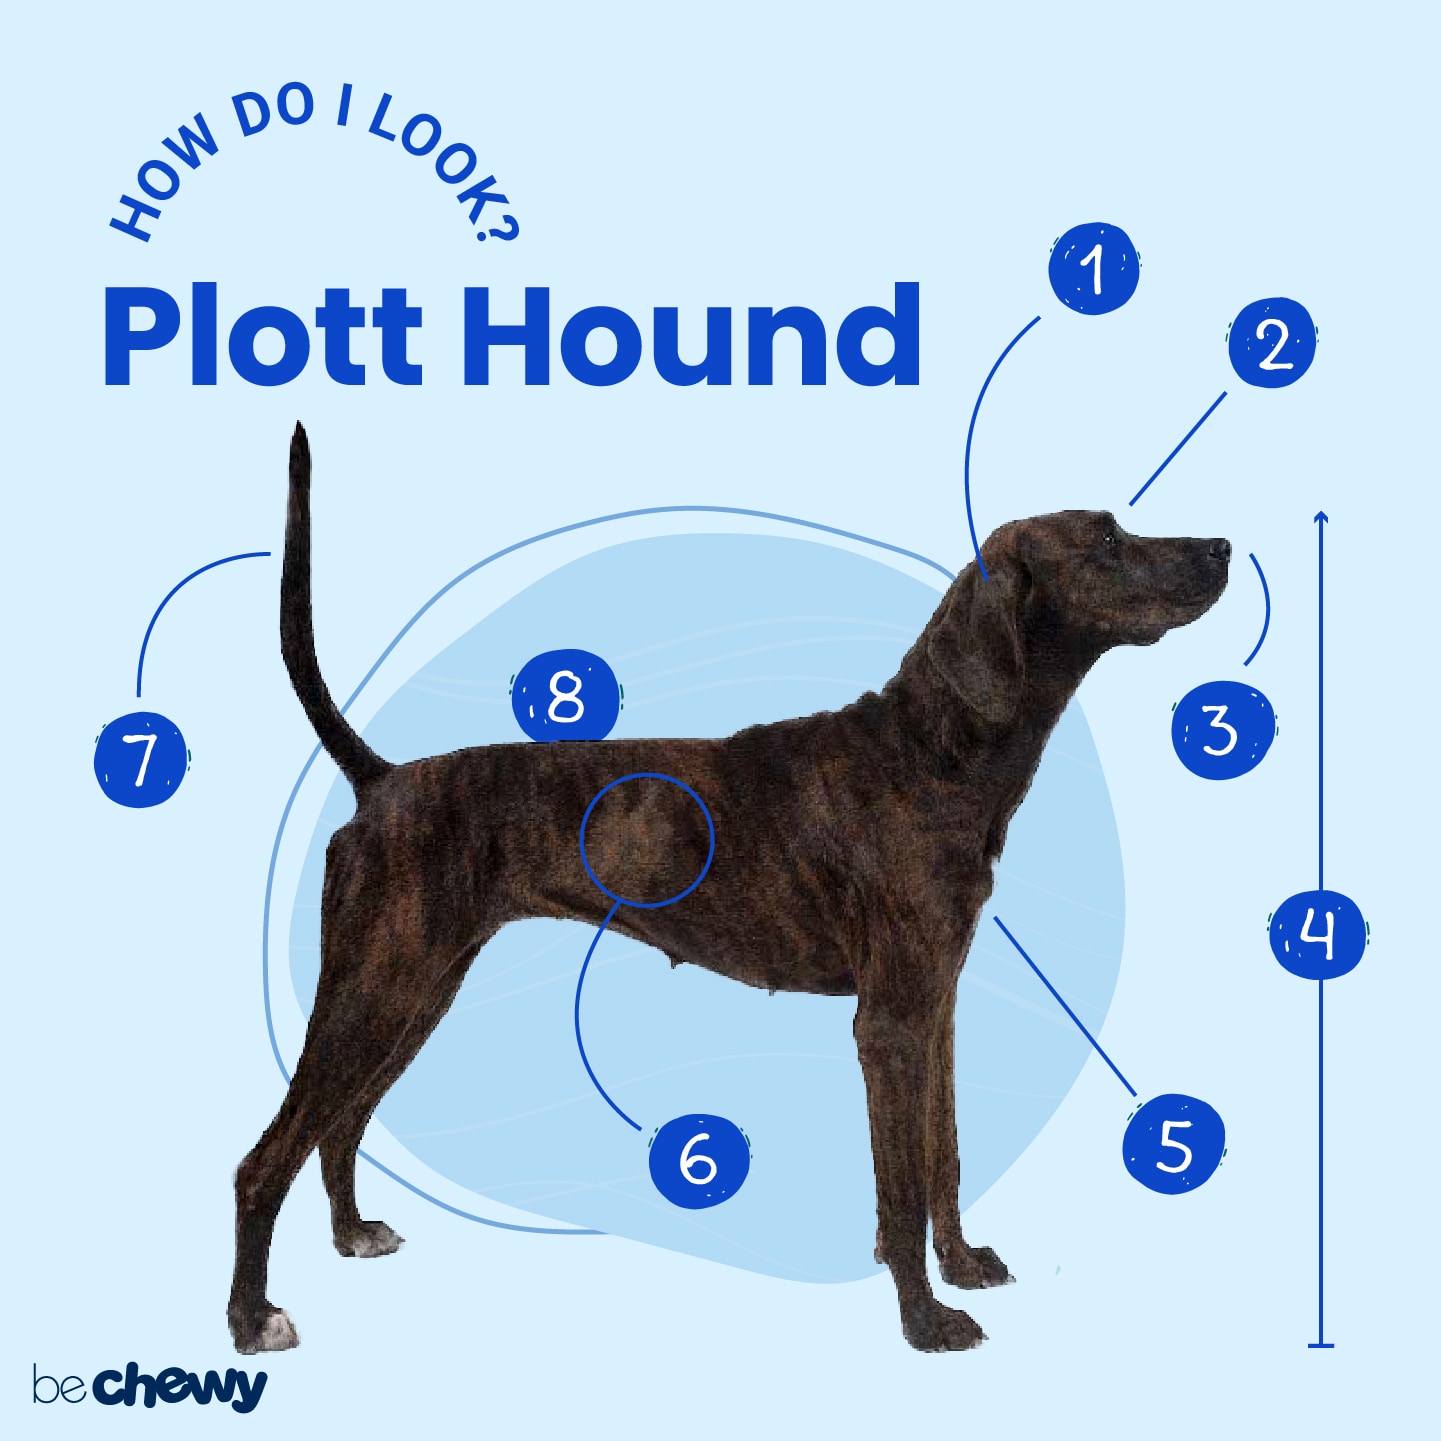 bloodhound pitbull mix